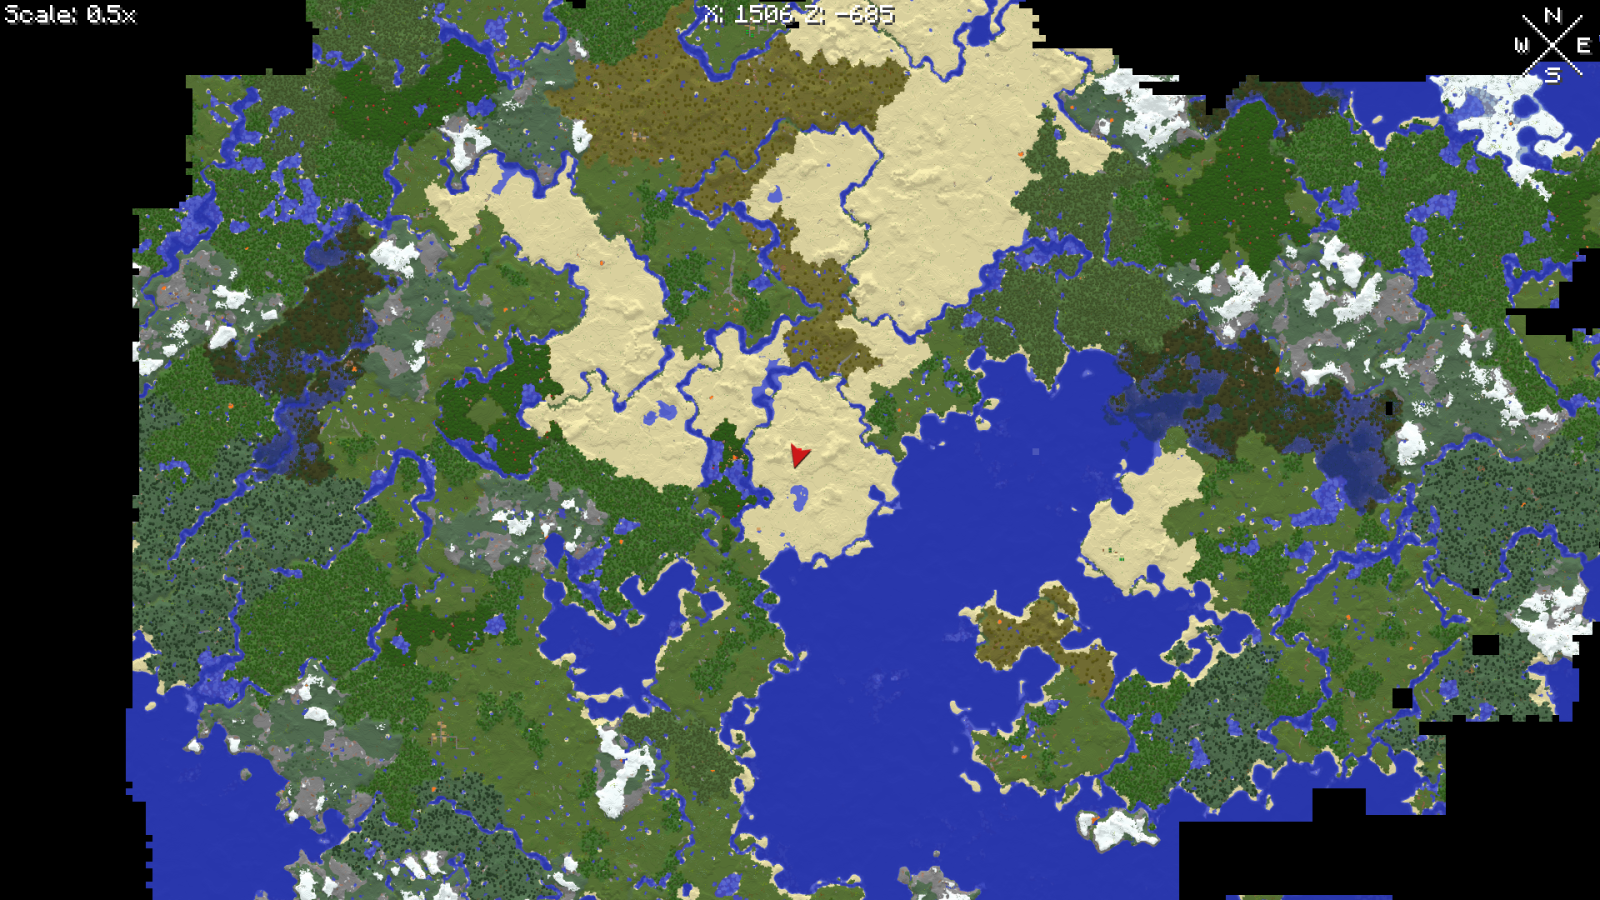 minecraft universal map download